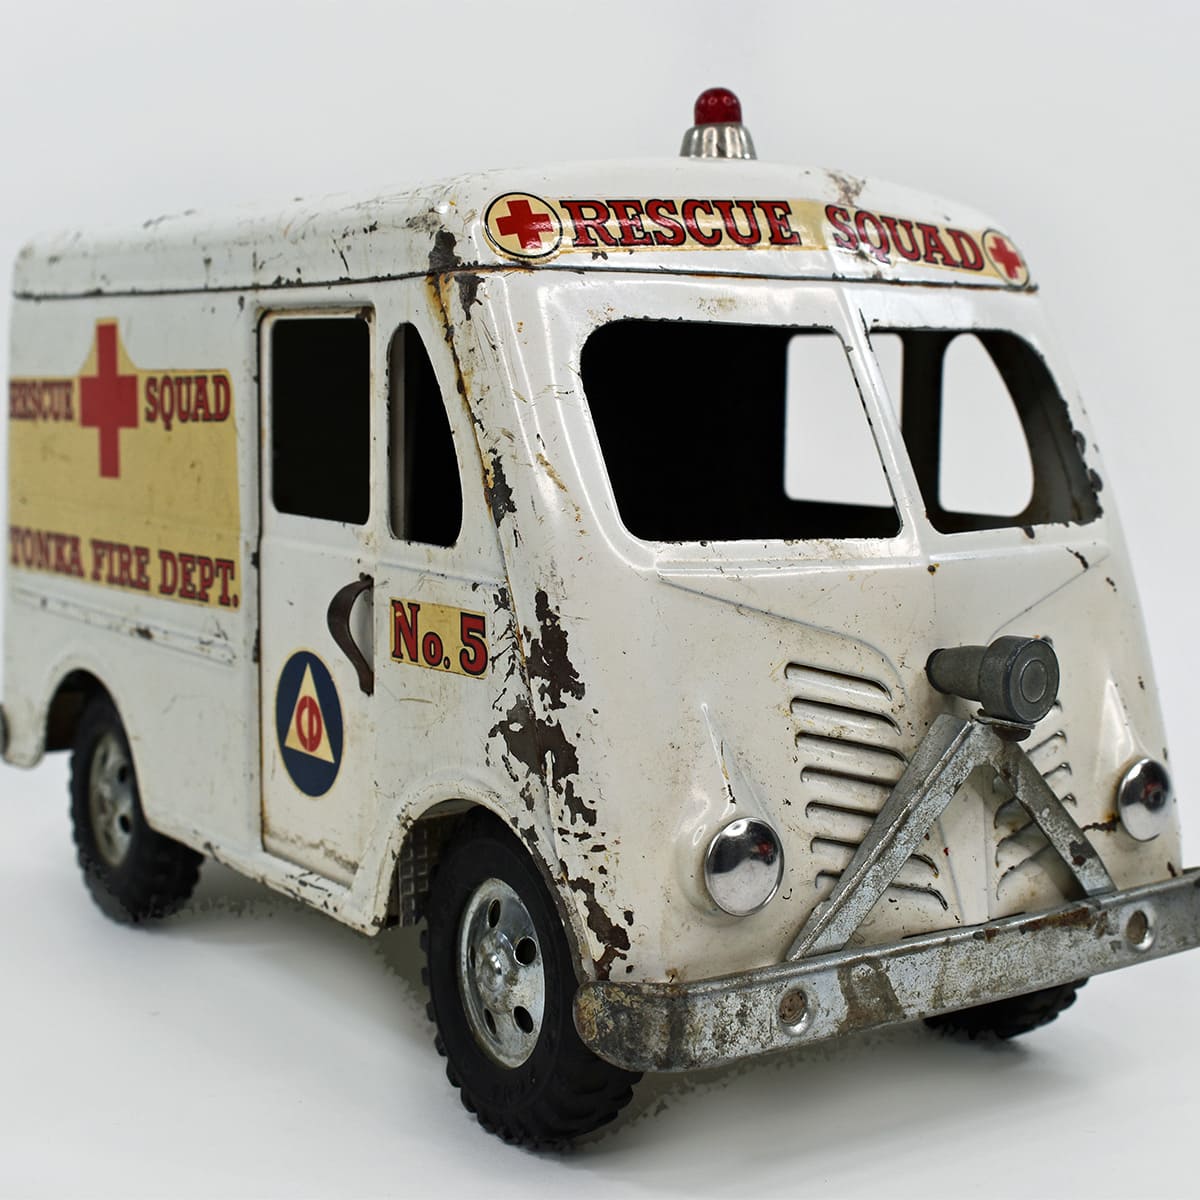 1950s Tonka Rescue Squad